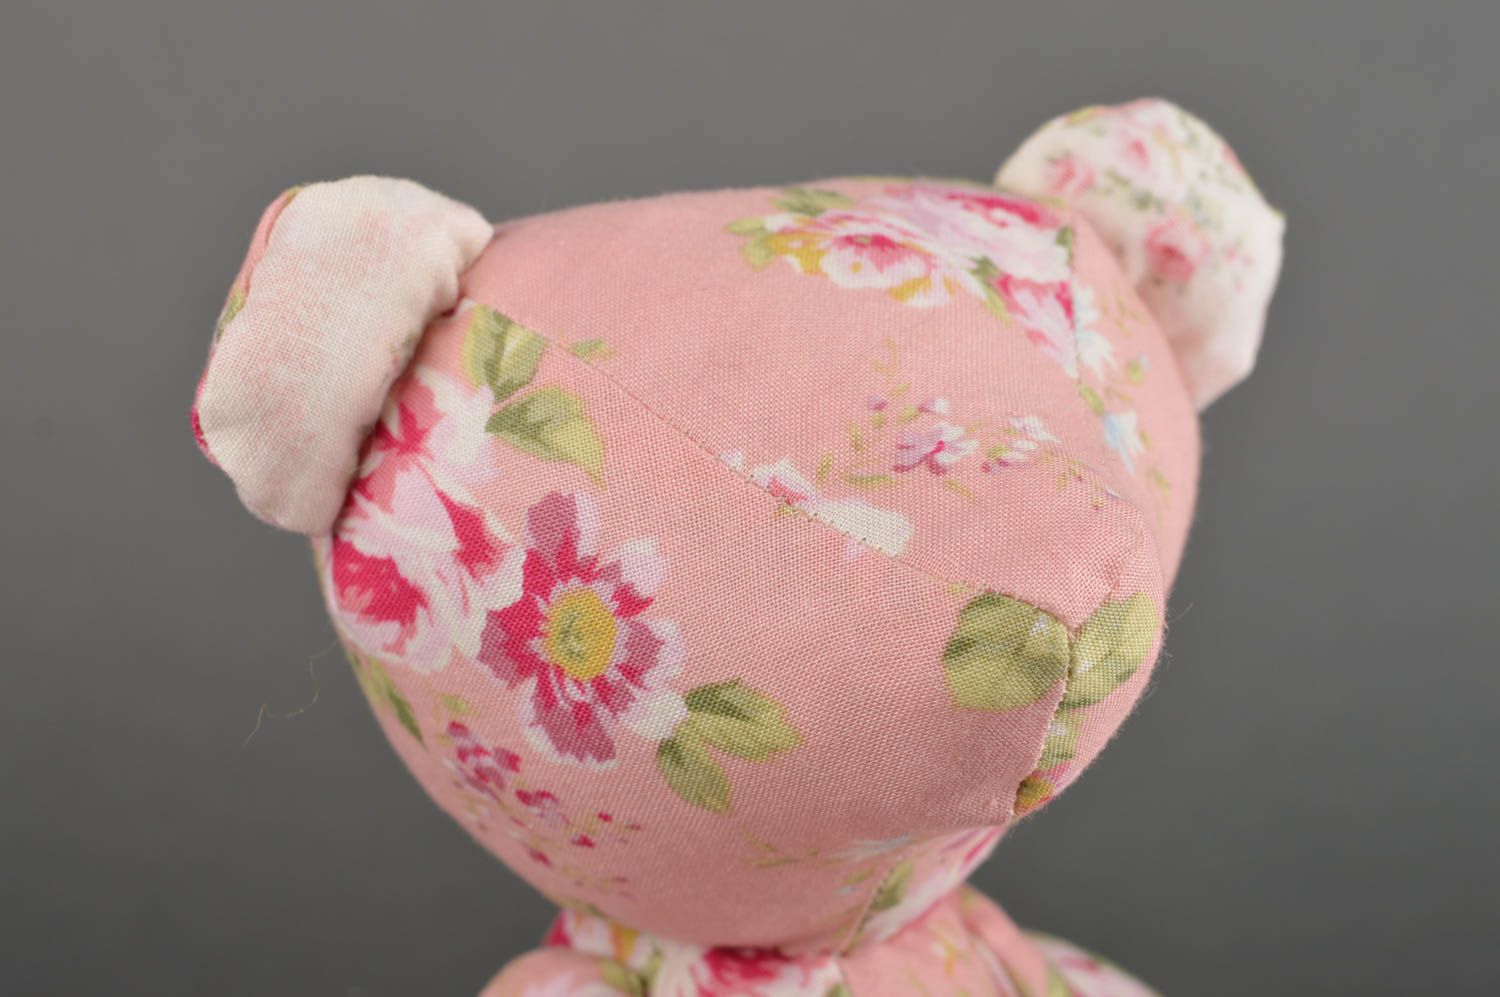 Игрушка мишка из ткани игрушка ручной работы интересный подарок для ребенка фото 4